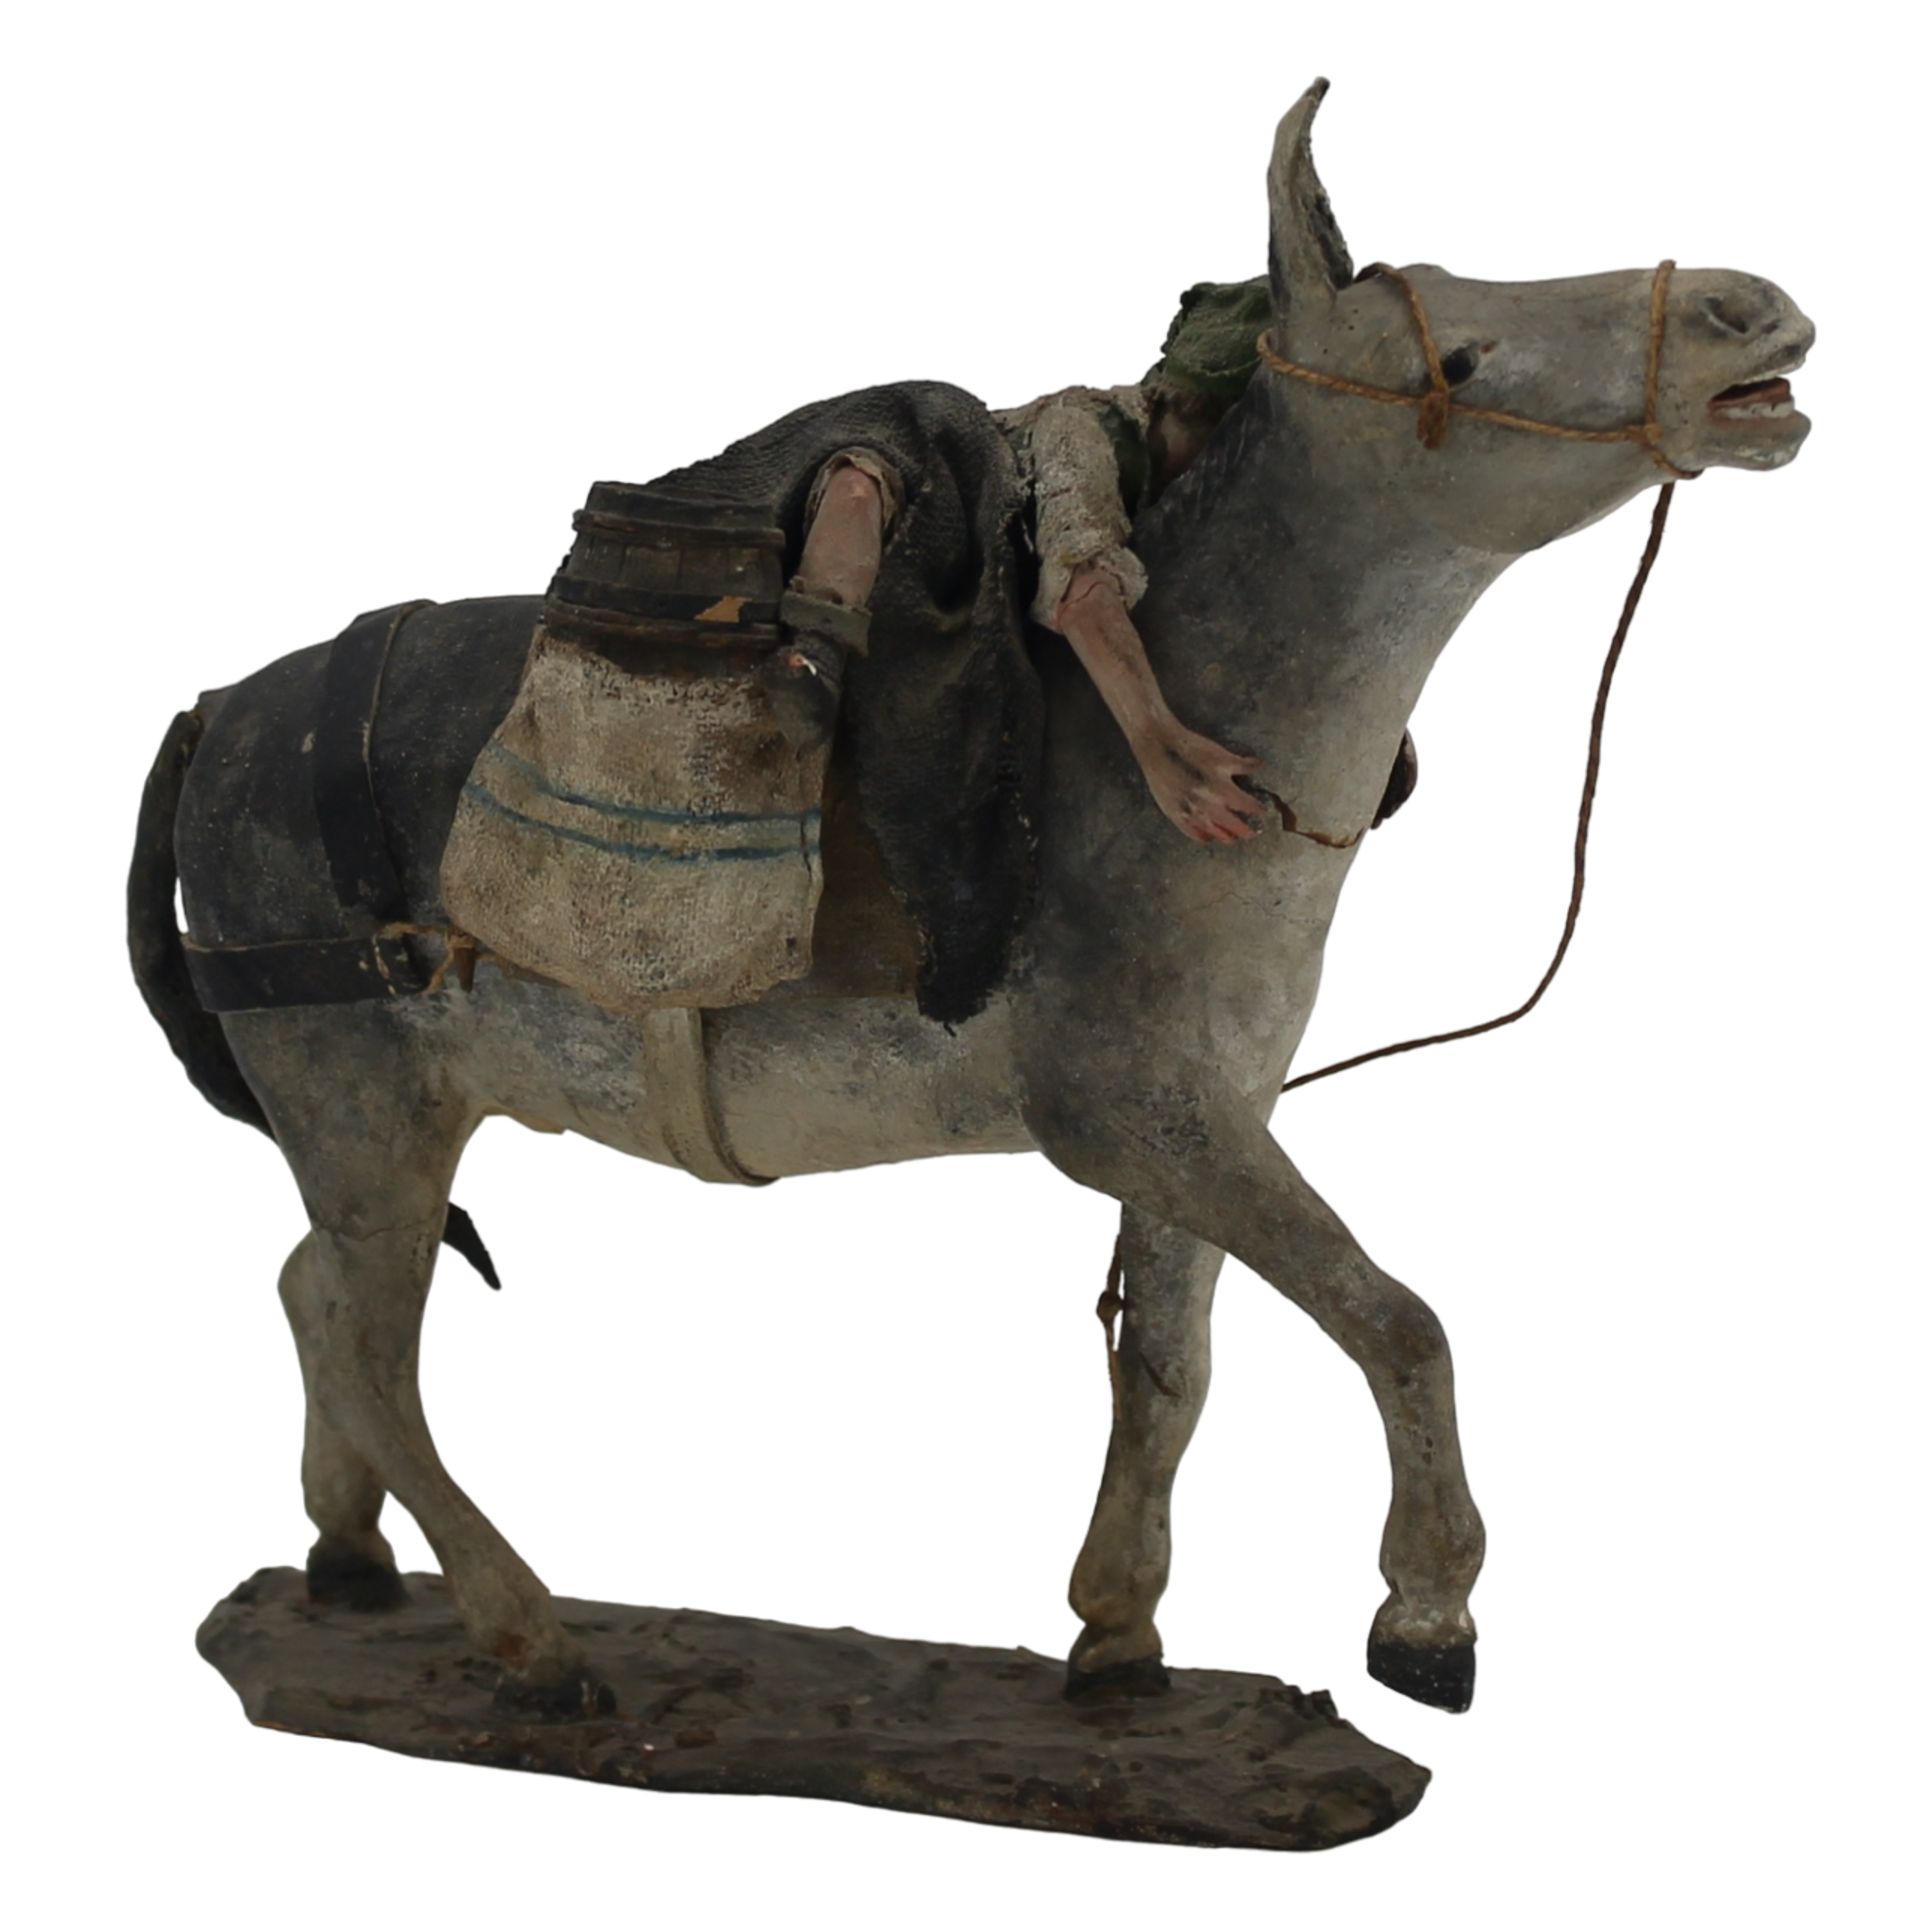 Popolano su asinello - Commoner on donkey - Image 2 of 2